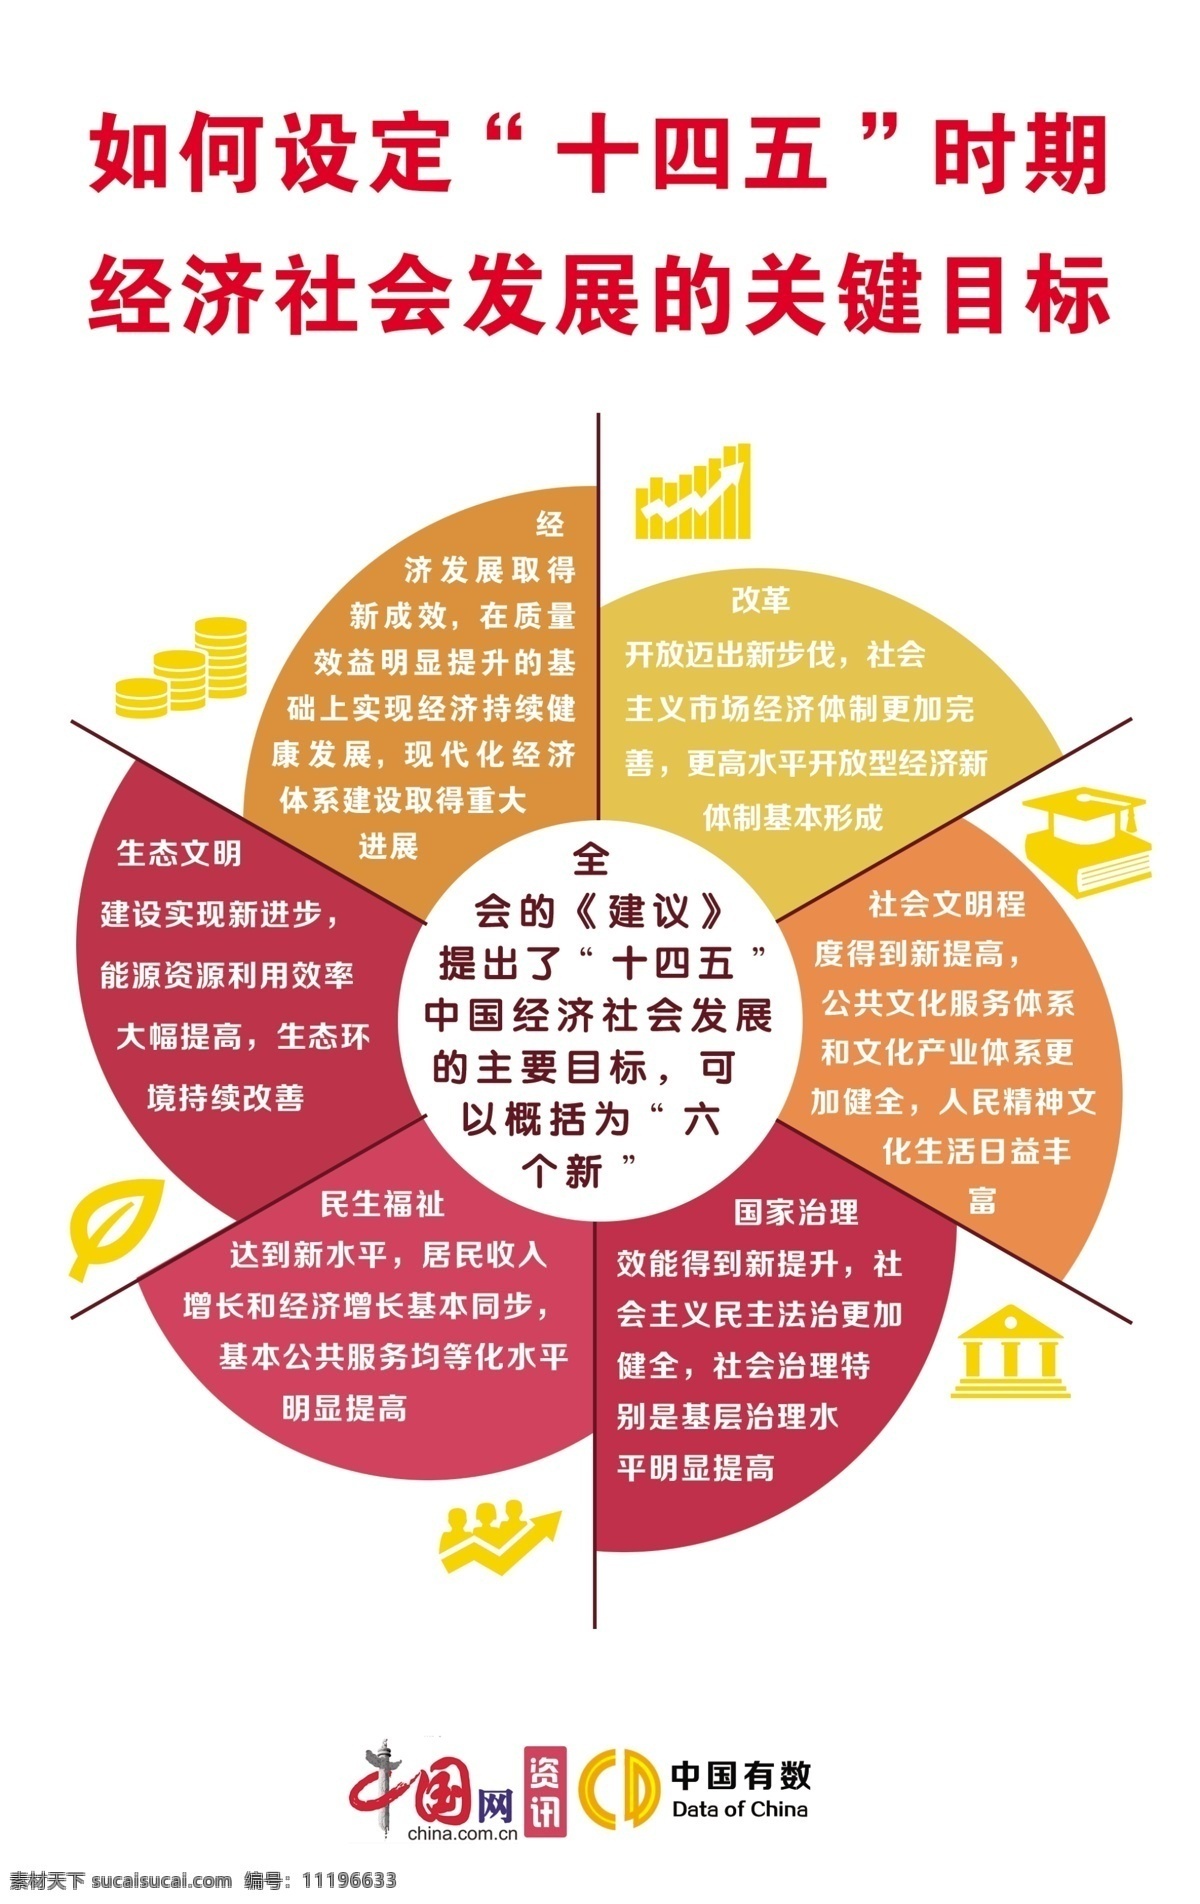 十四五图片 十四五 中国网 中国有数 形状 形状展板 经济社会 经济社会发展 十四五六个新 造型 造型展板 造型图版 社会图版 分层